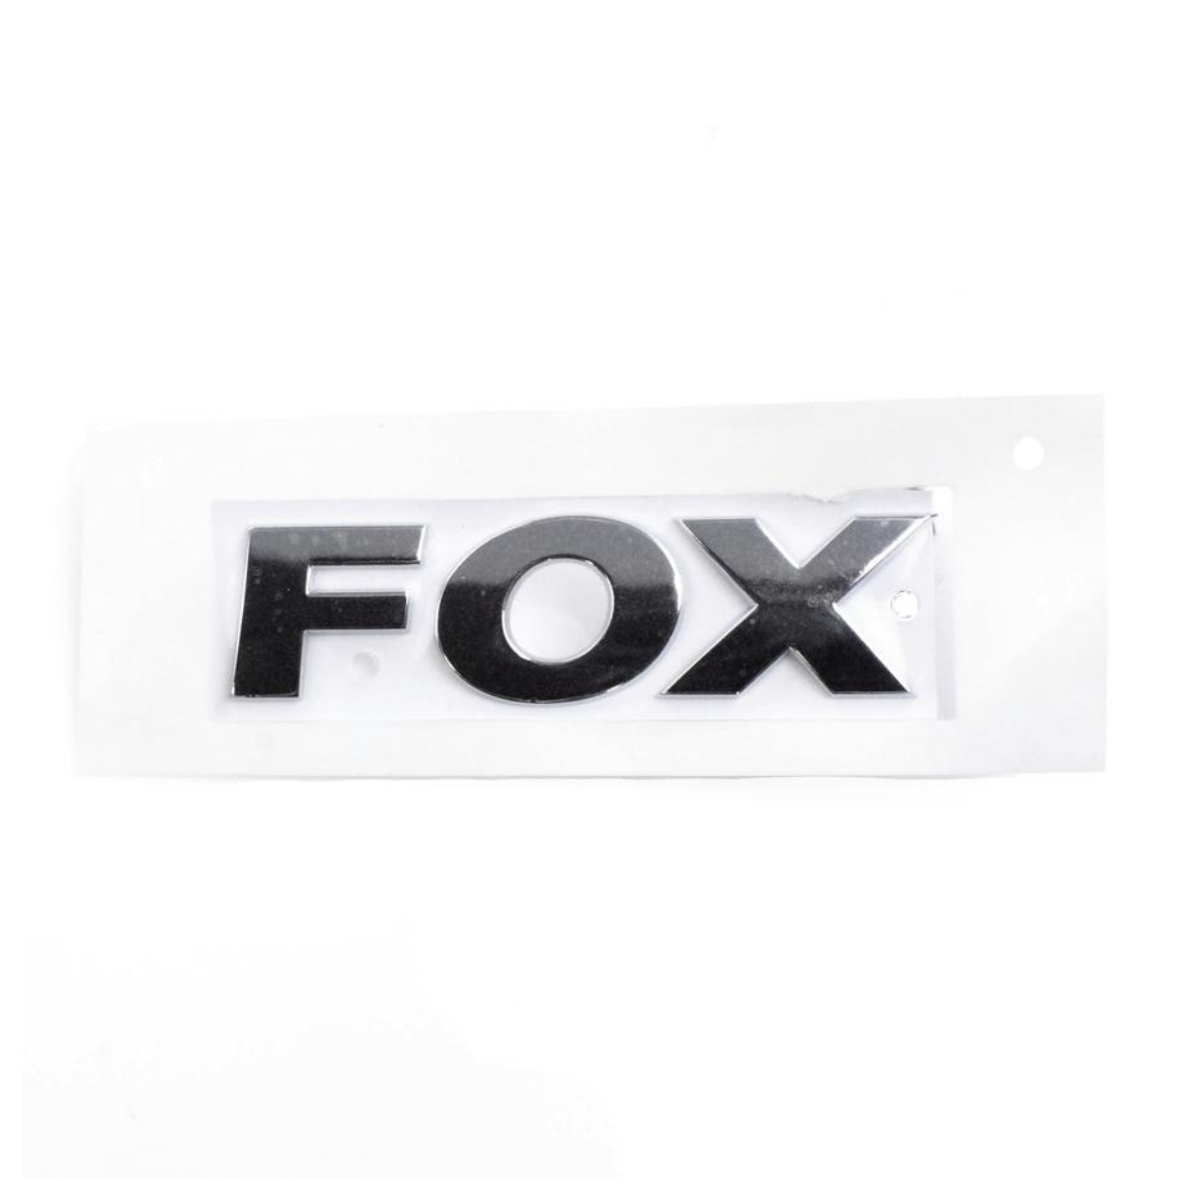 Emblema "Fox" Fox 2010/2014 5Z0853687G739